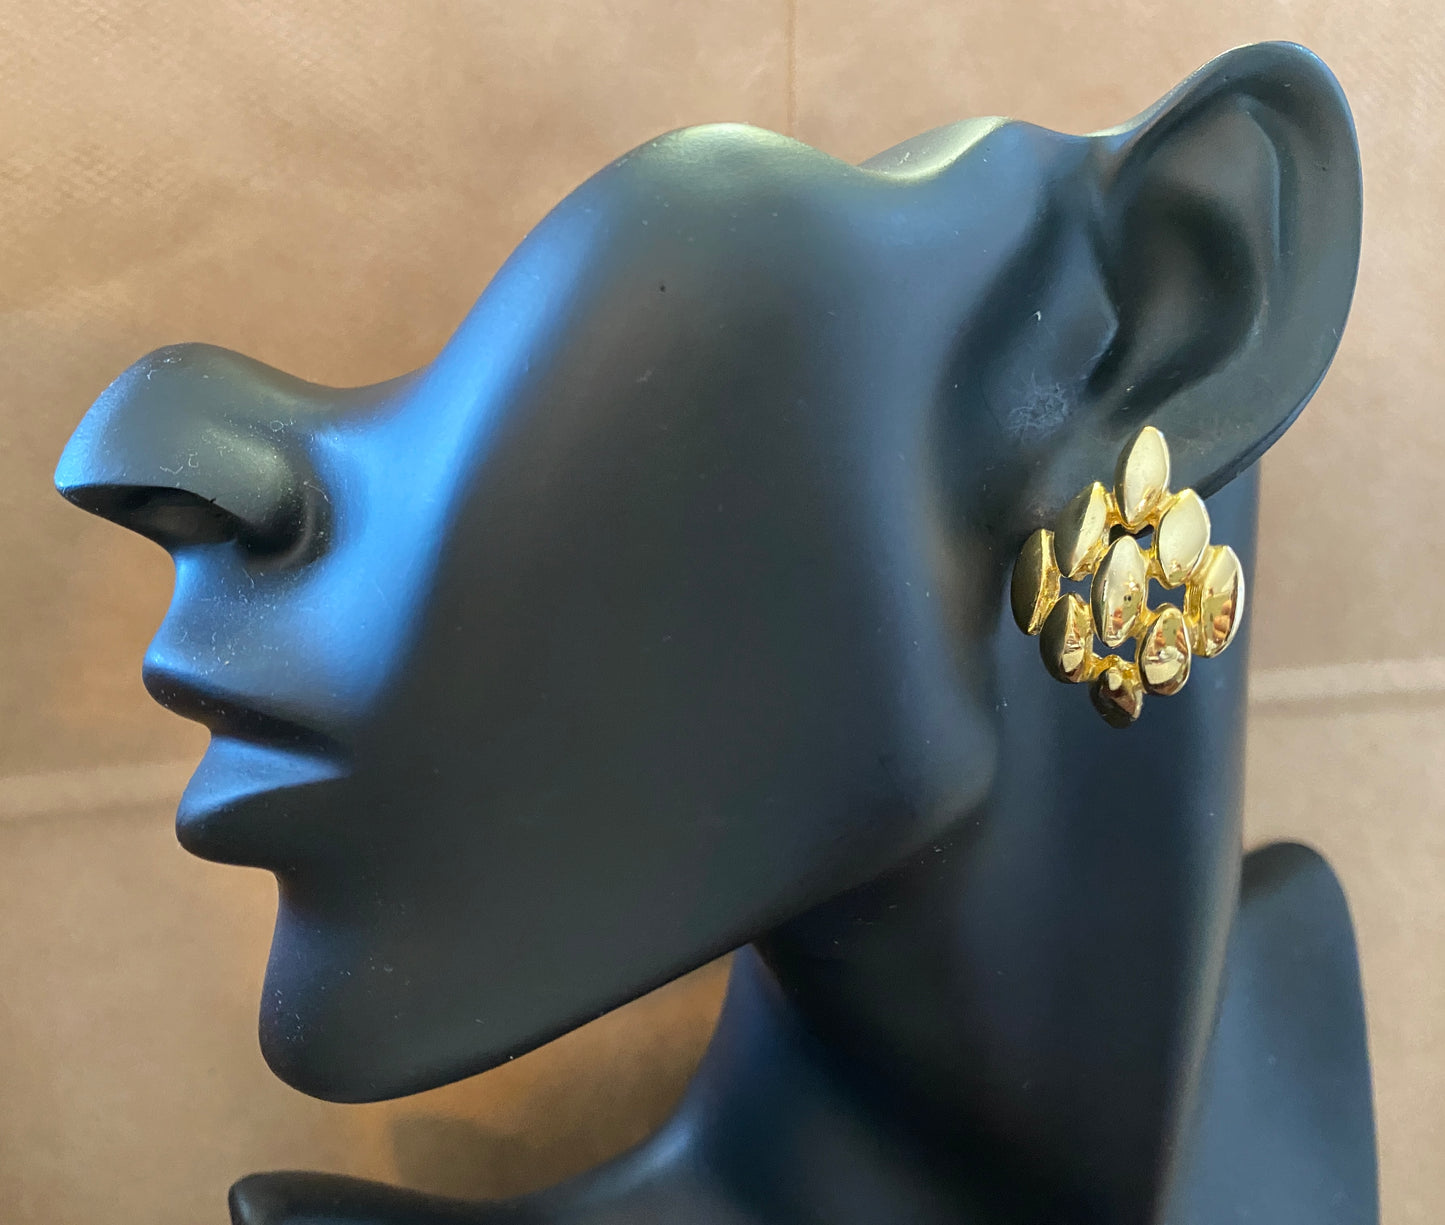 Vintage Gold Tone Spike Domed Pierced Earrings